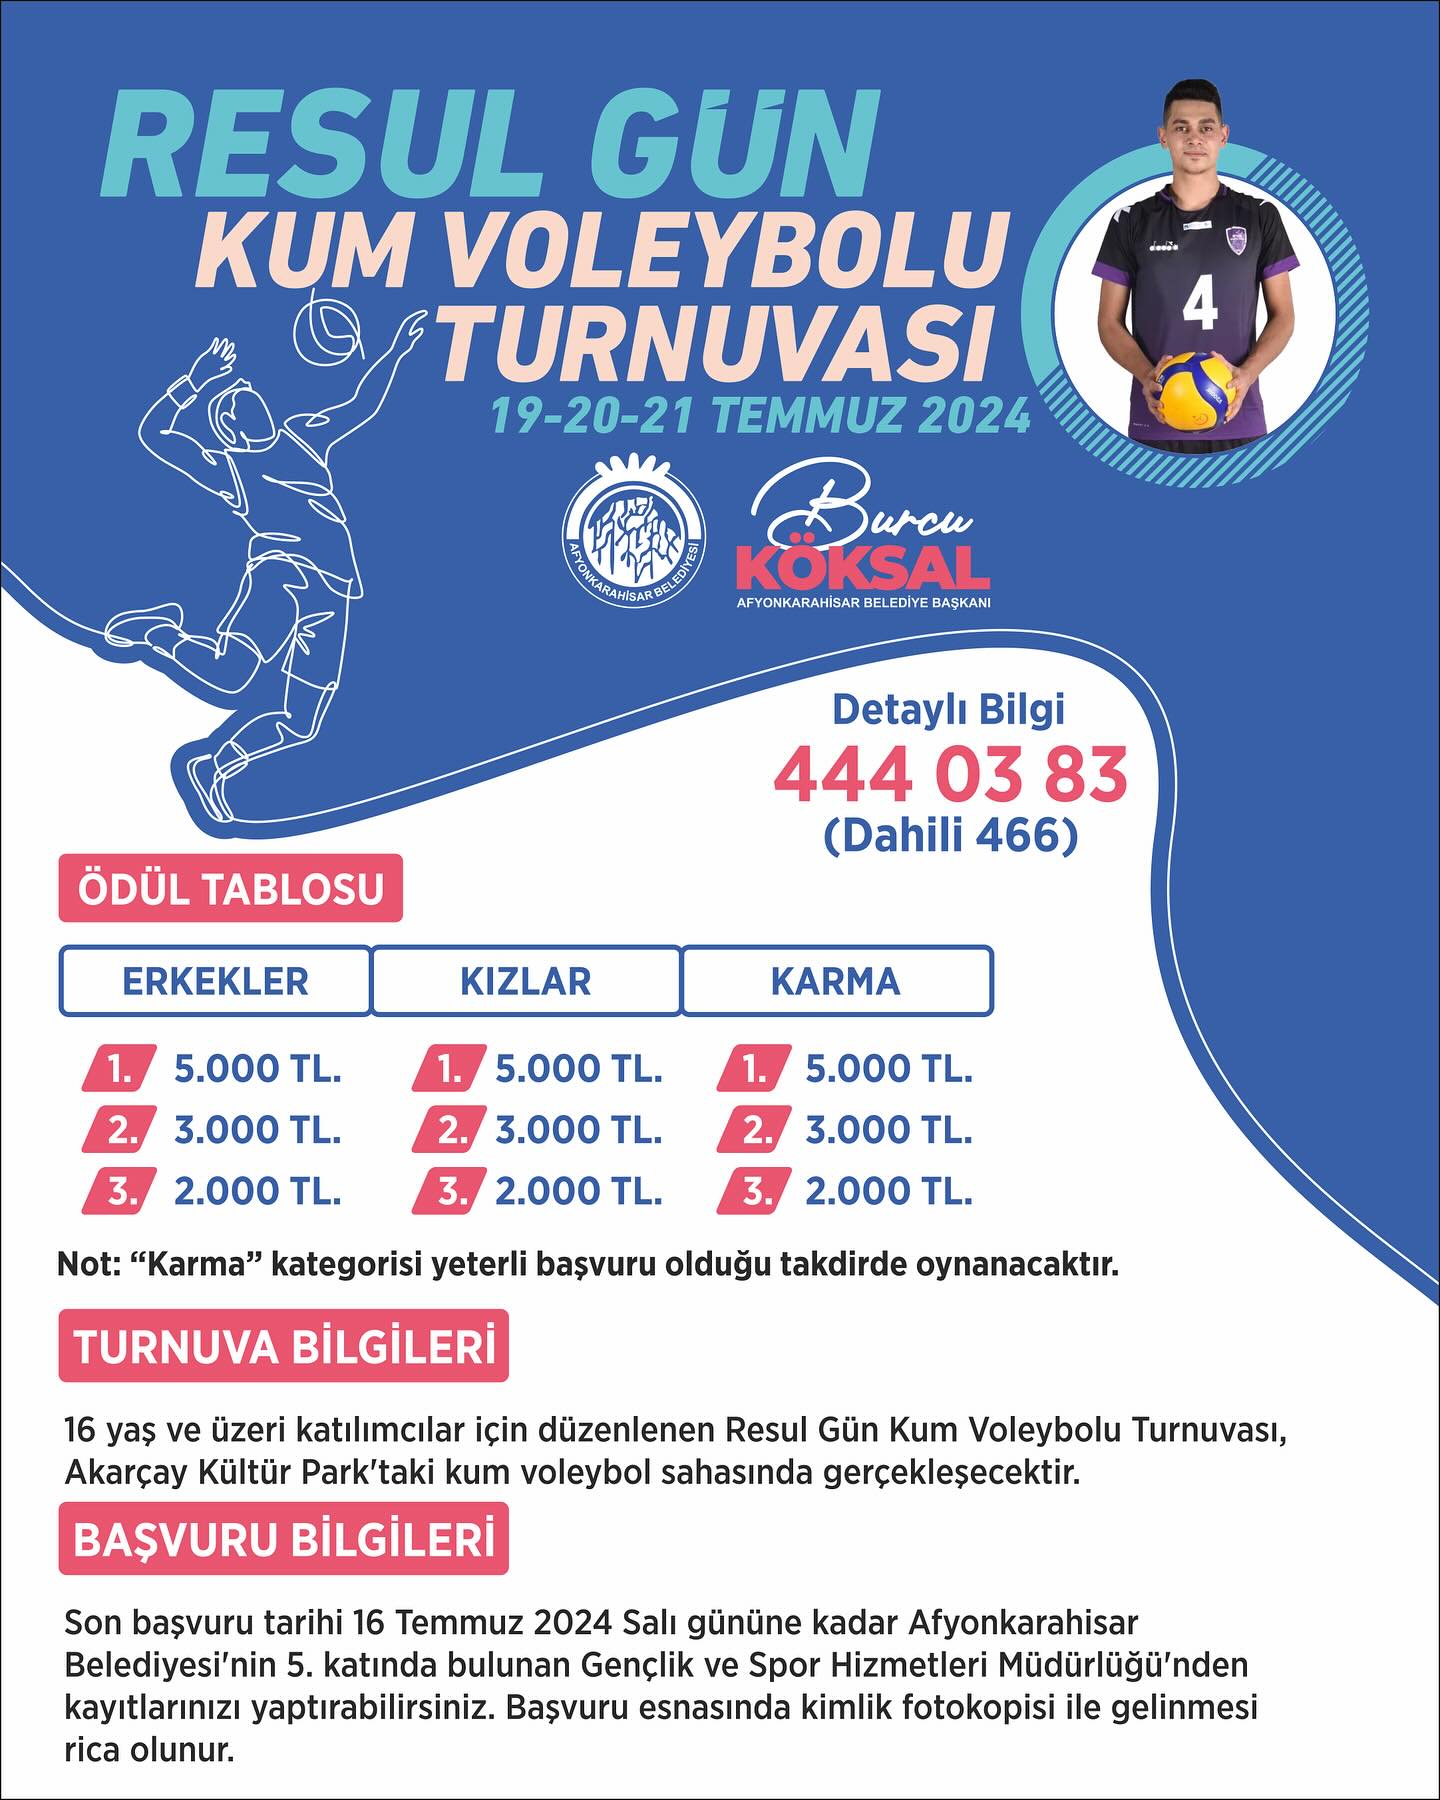 Afyonkarahisar Belediyesi genç voleybolcu adına turnuva düzenleyecek!